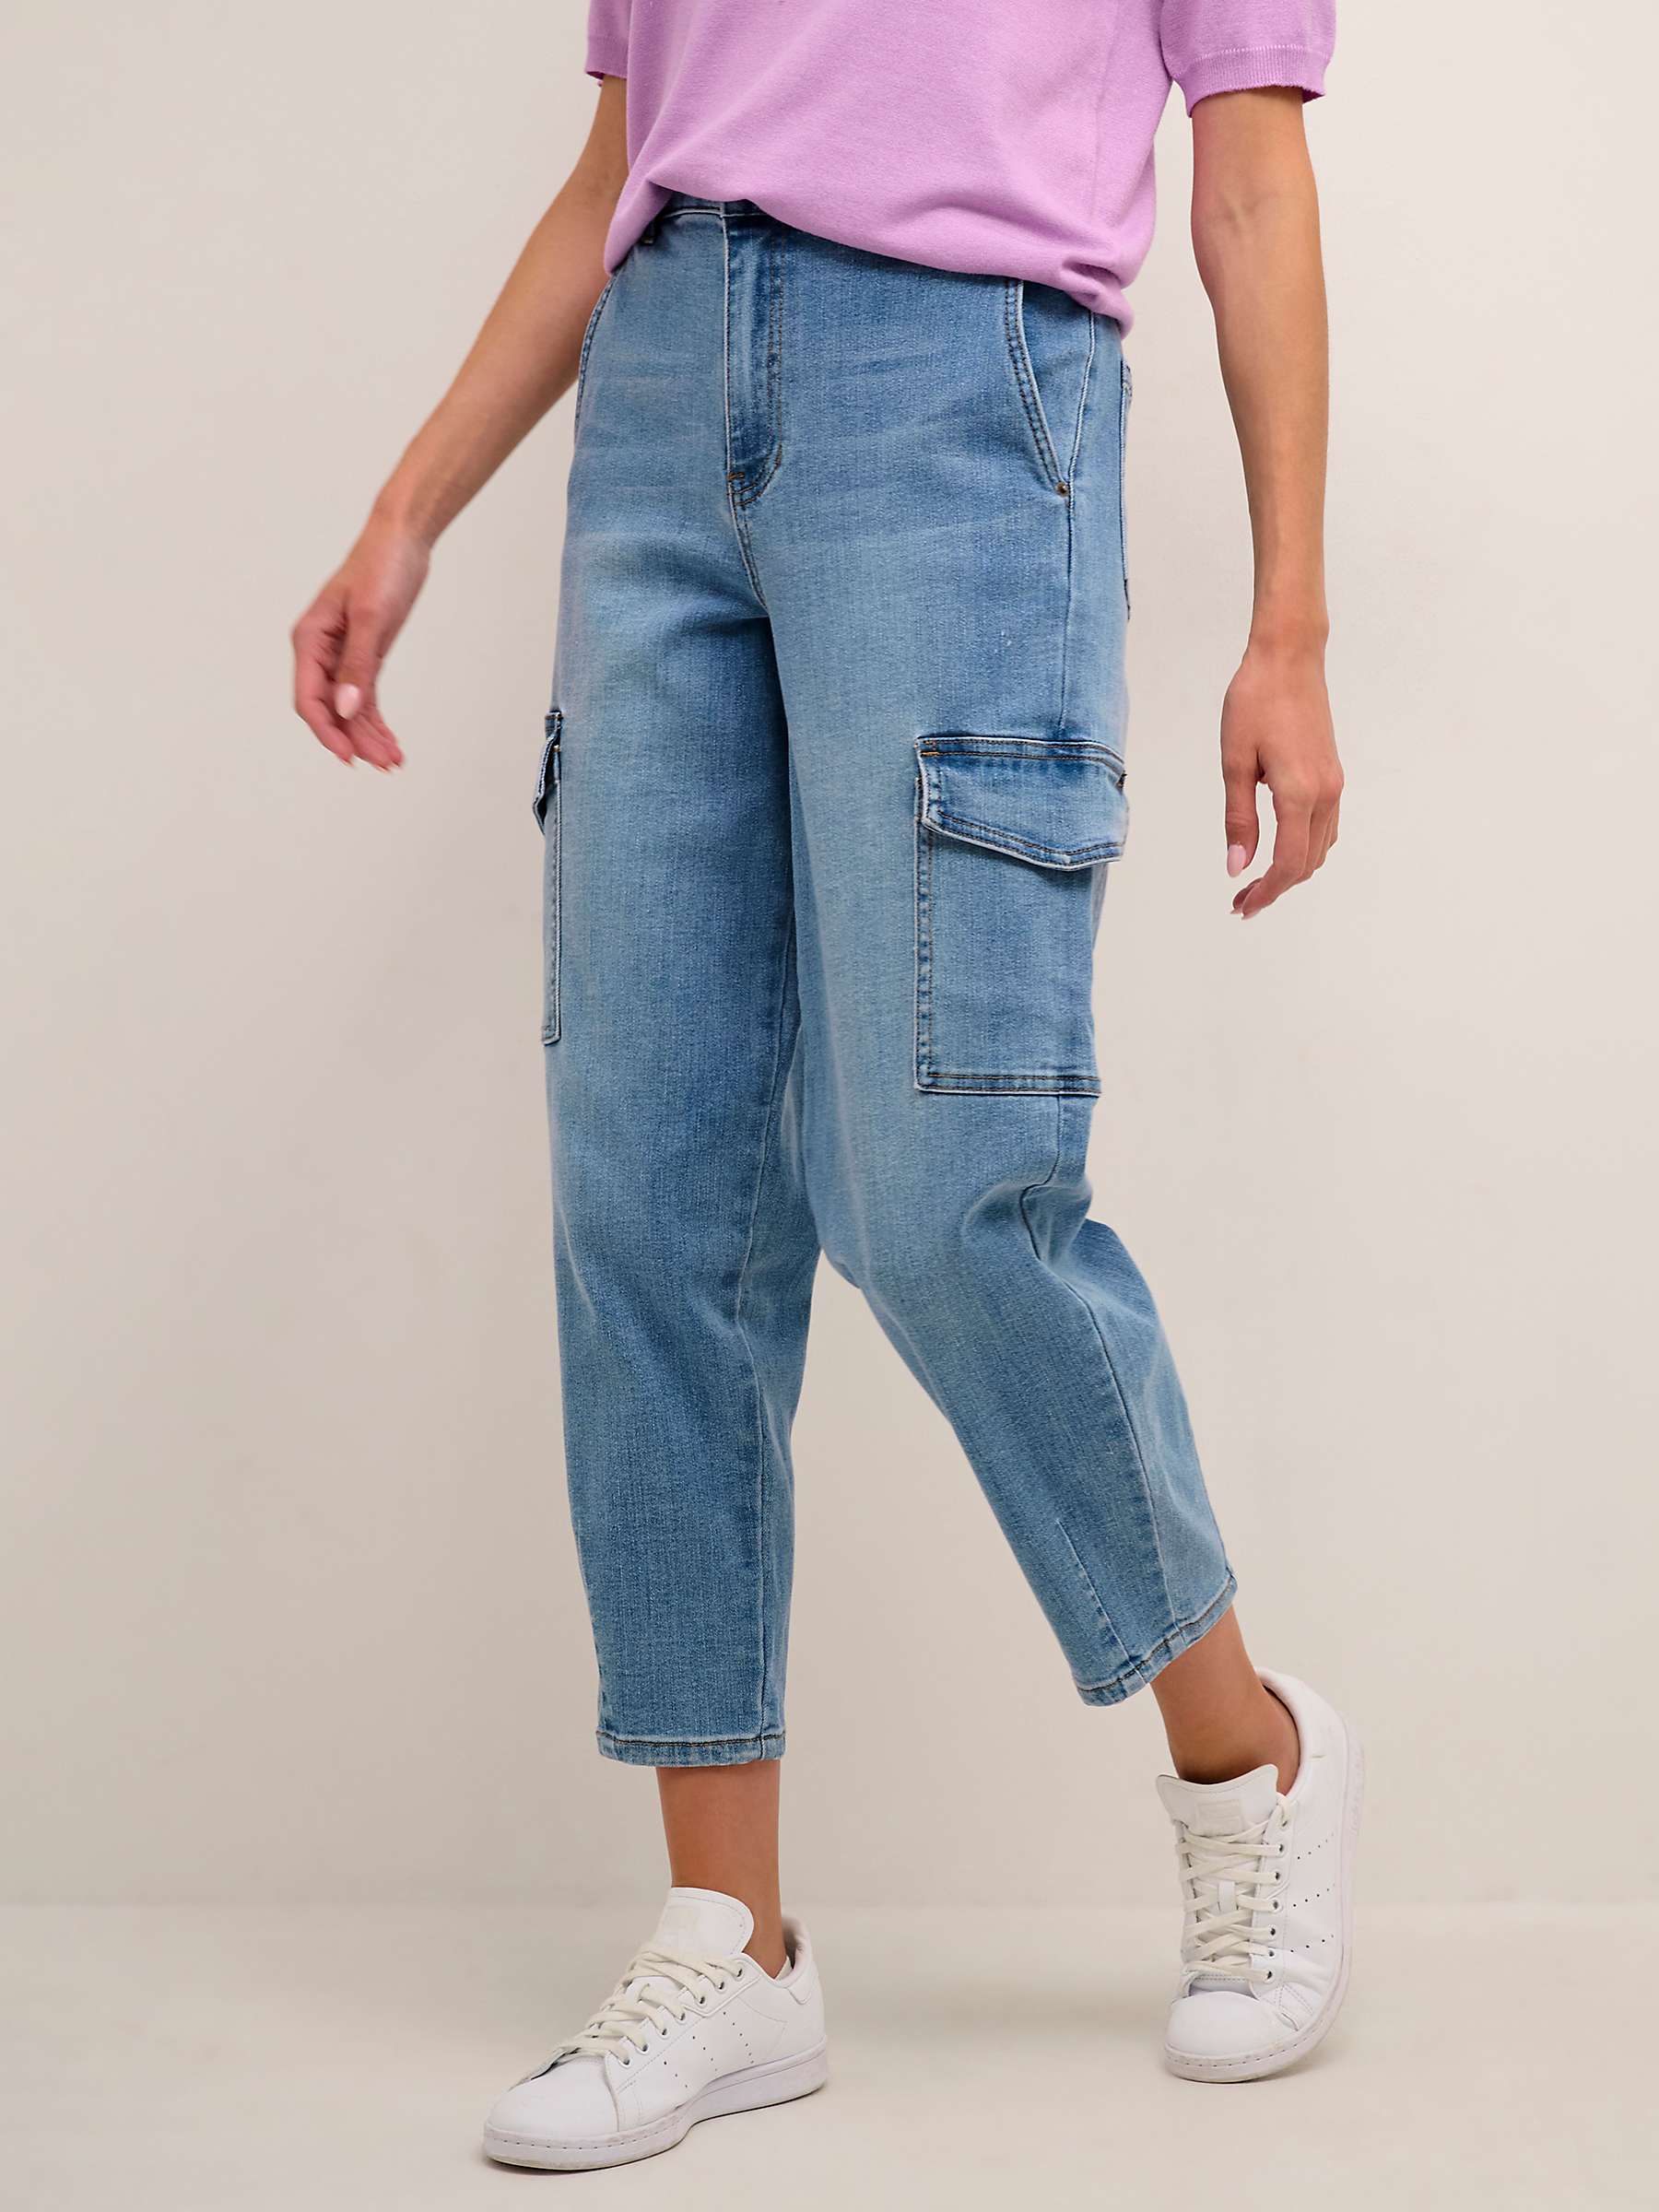 Buy KAFFE Sinem Barrel 7/8 Jeans, Blue Online at johnlewis.com